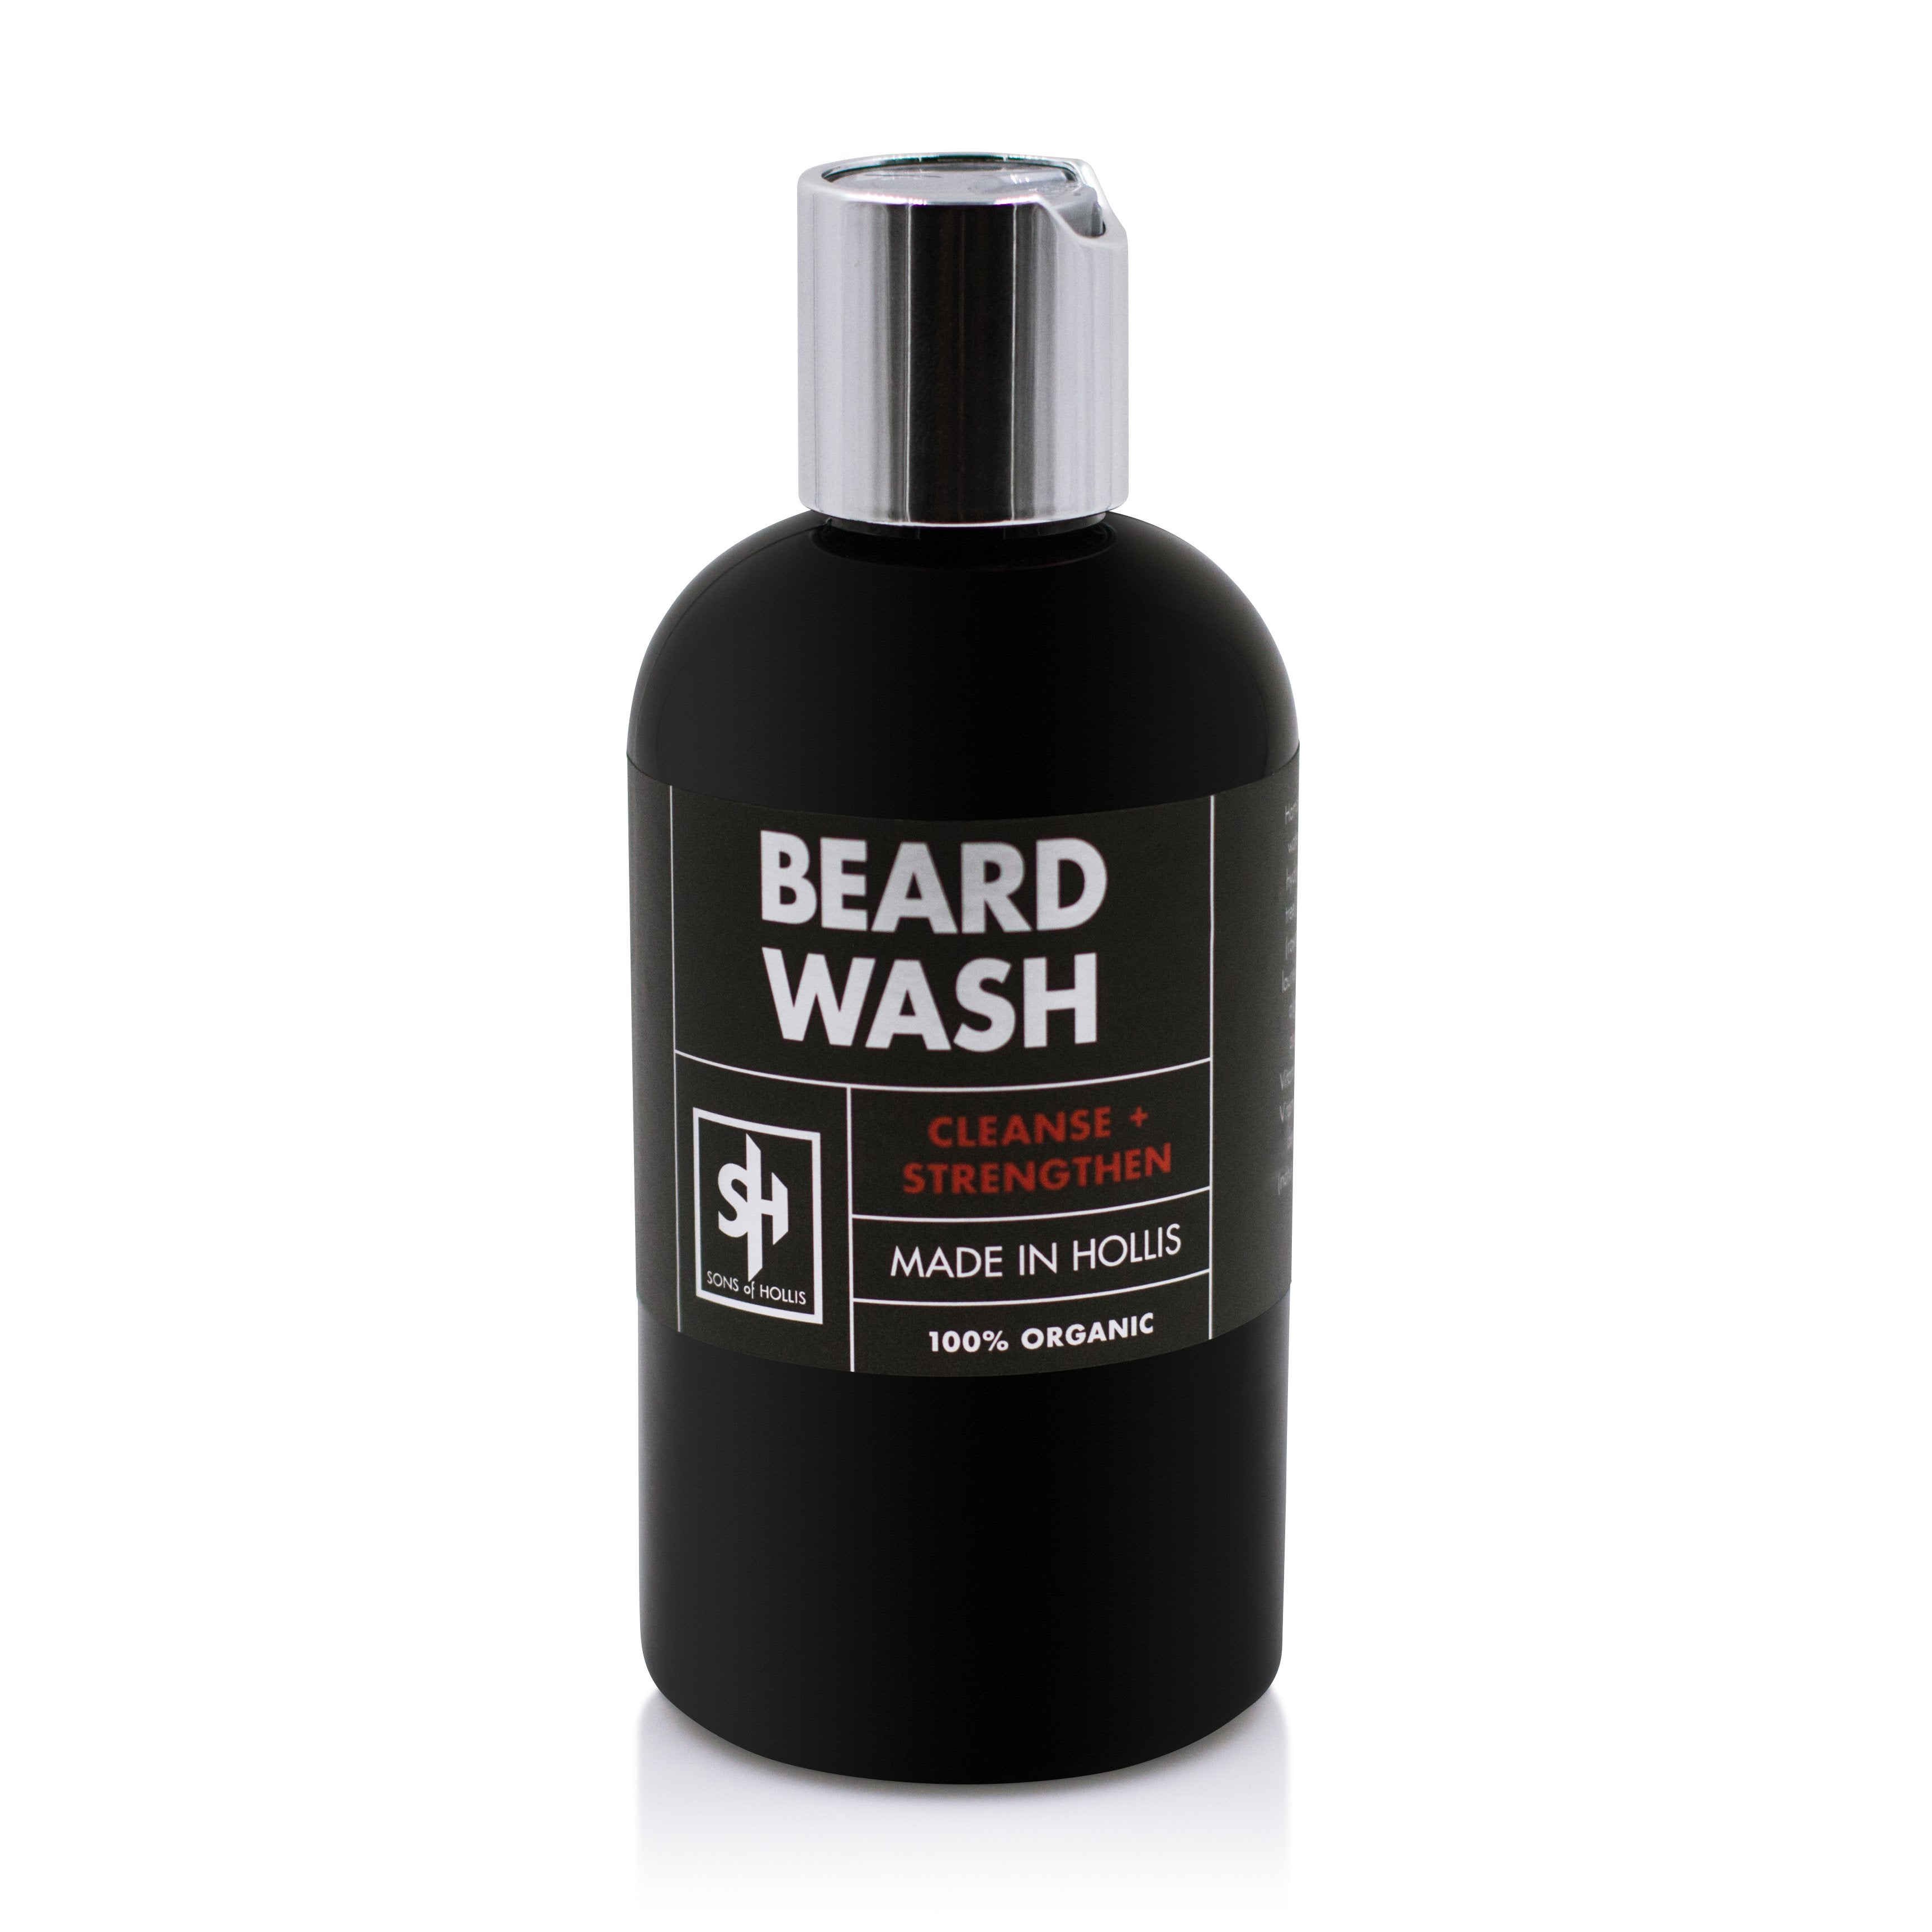 Cleansing Beard Wash